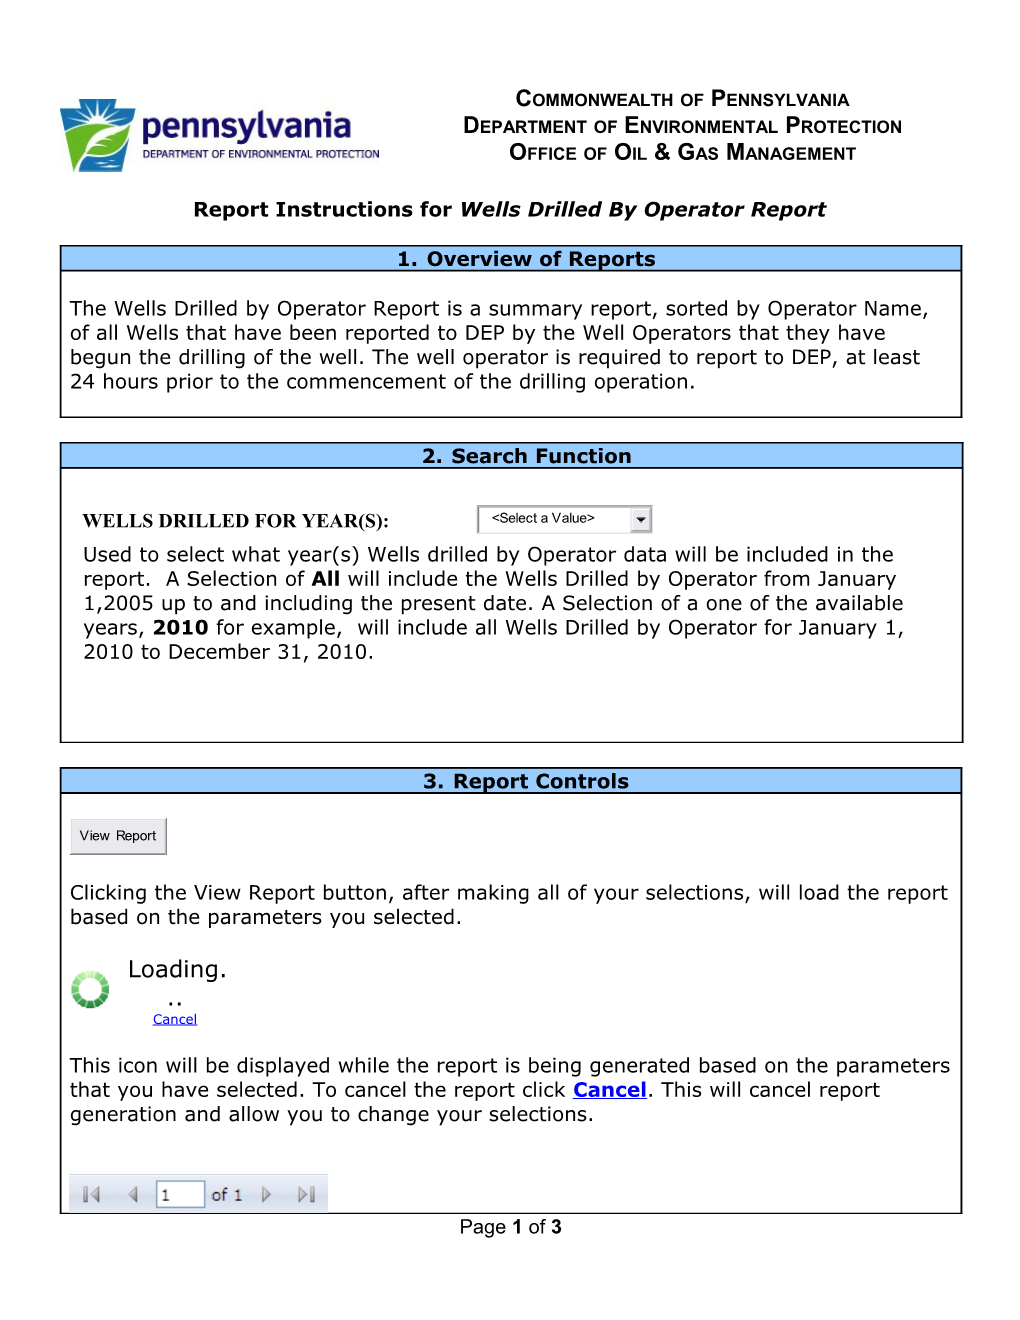 Report Instructions for Wellsdrilledby Operatorreport